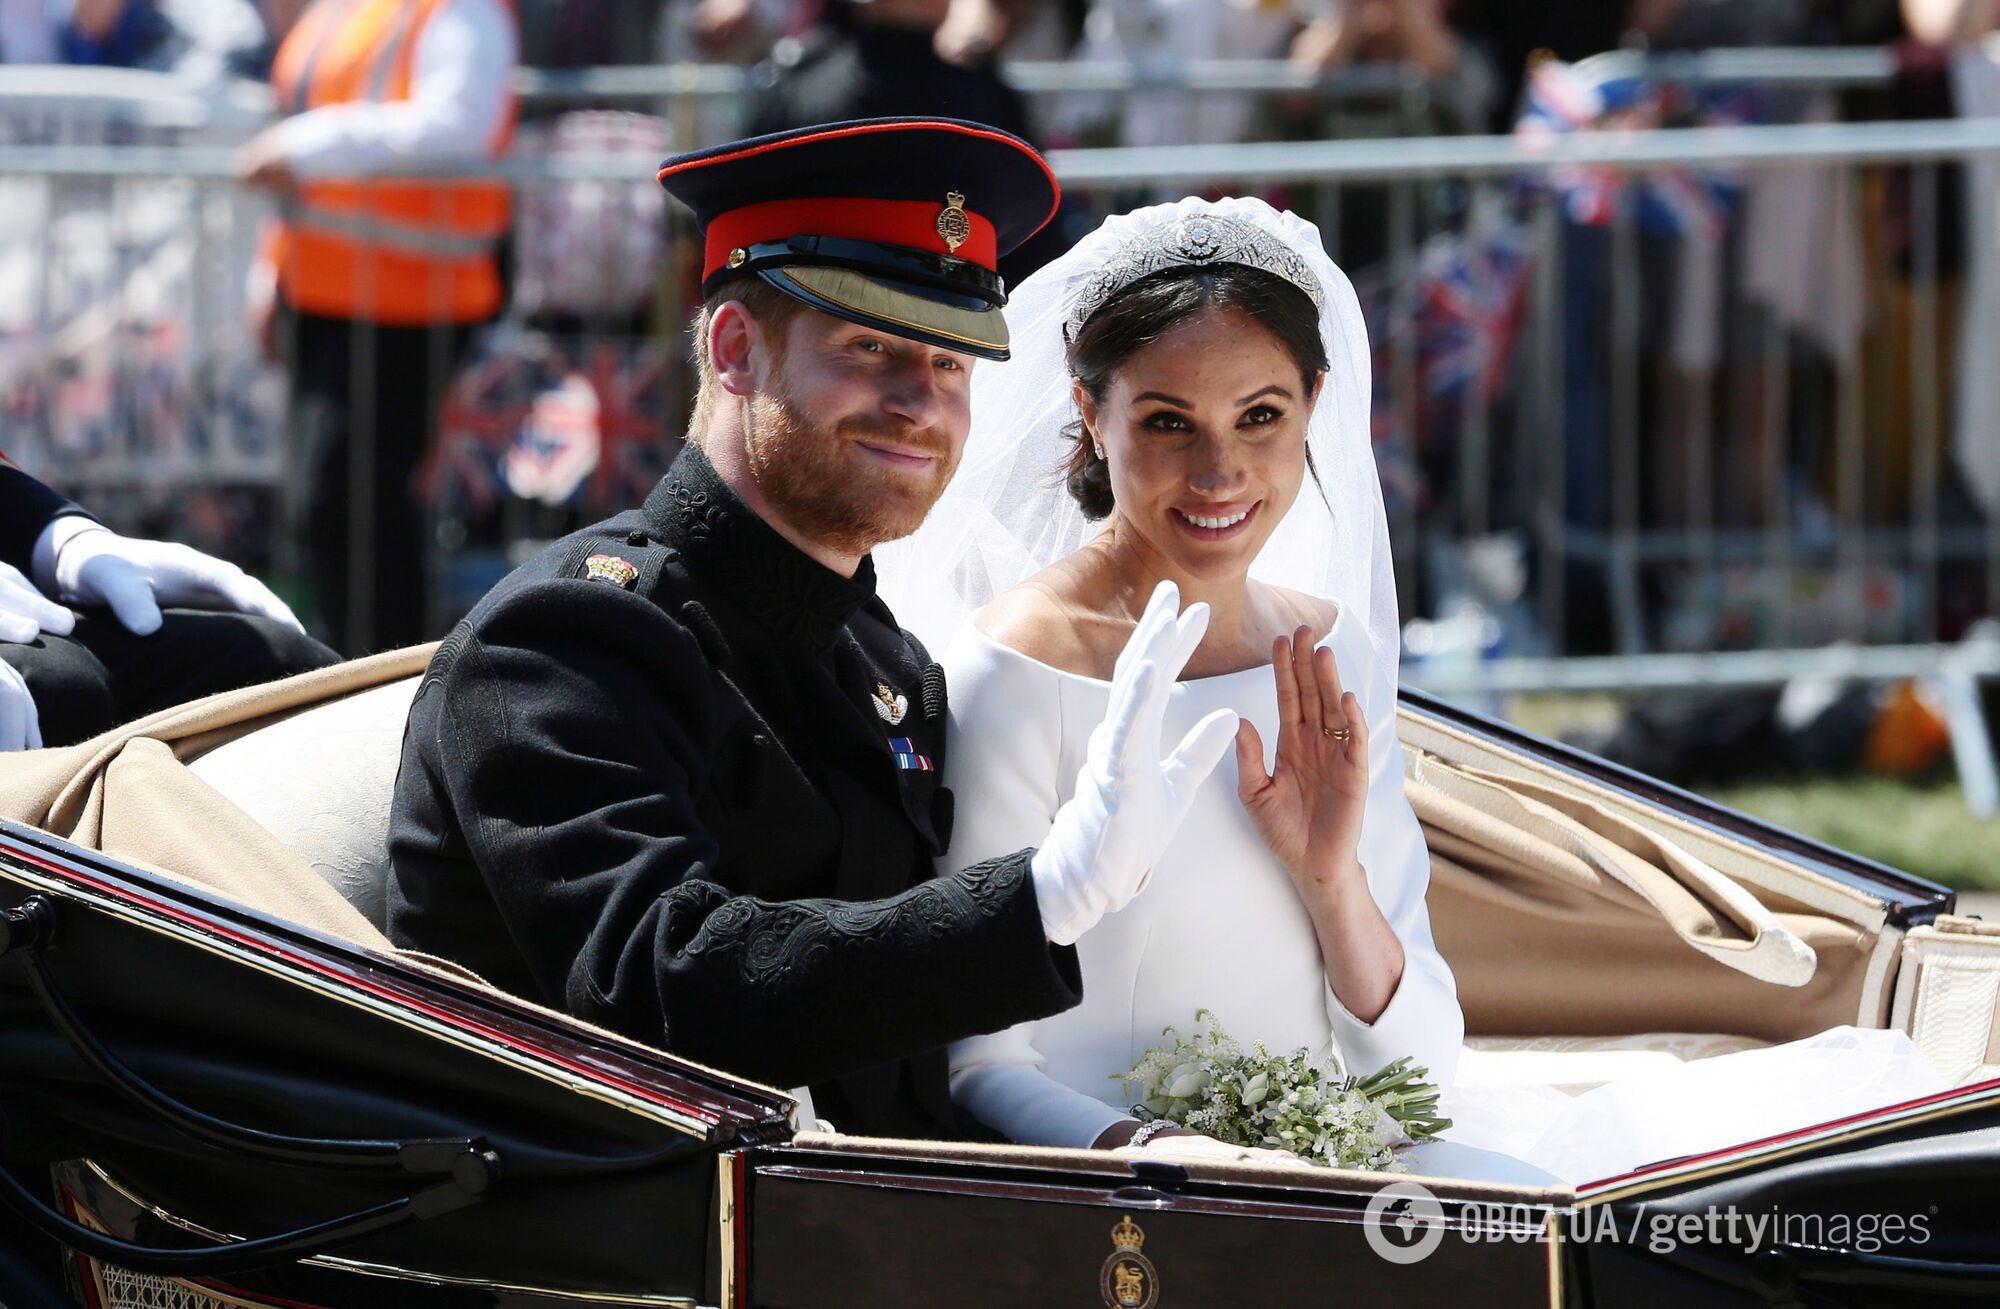 Королівський фотограф назвав "катастрофою" весілля принца Гаррі та Меган Маркл

